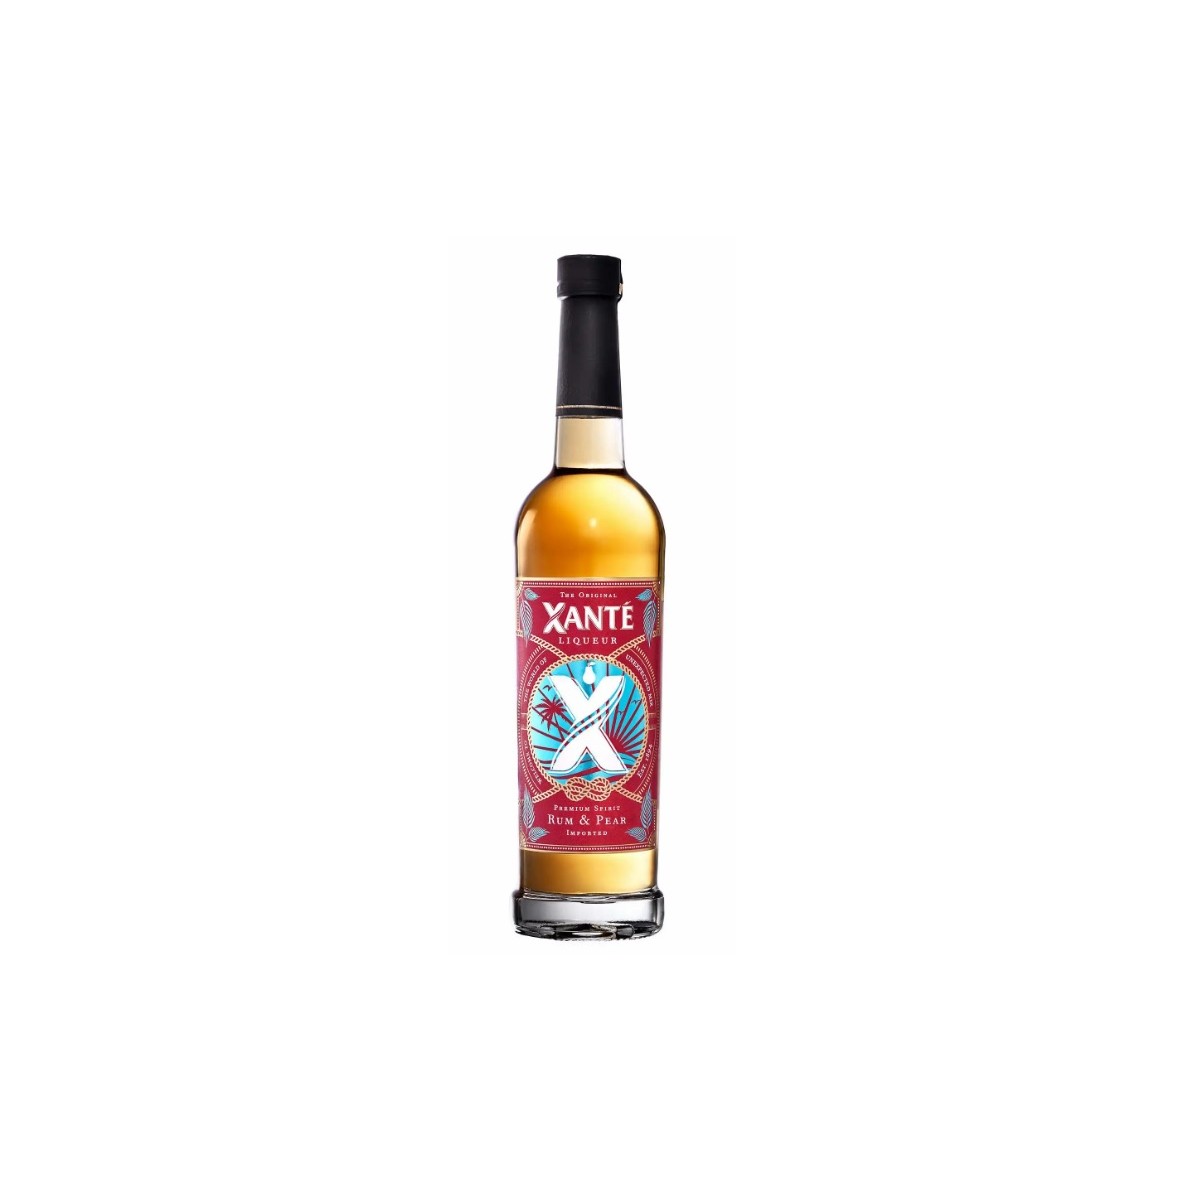 Xanté Rum & Pear 35% 50cl